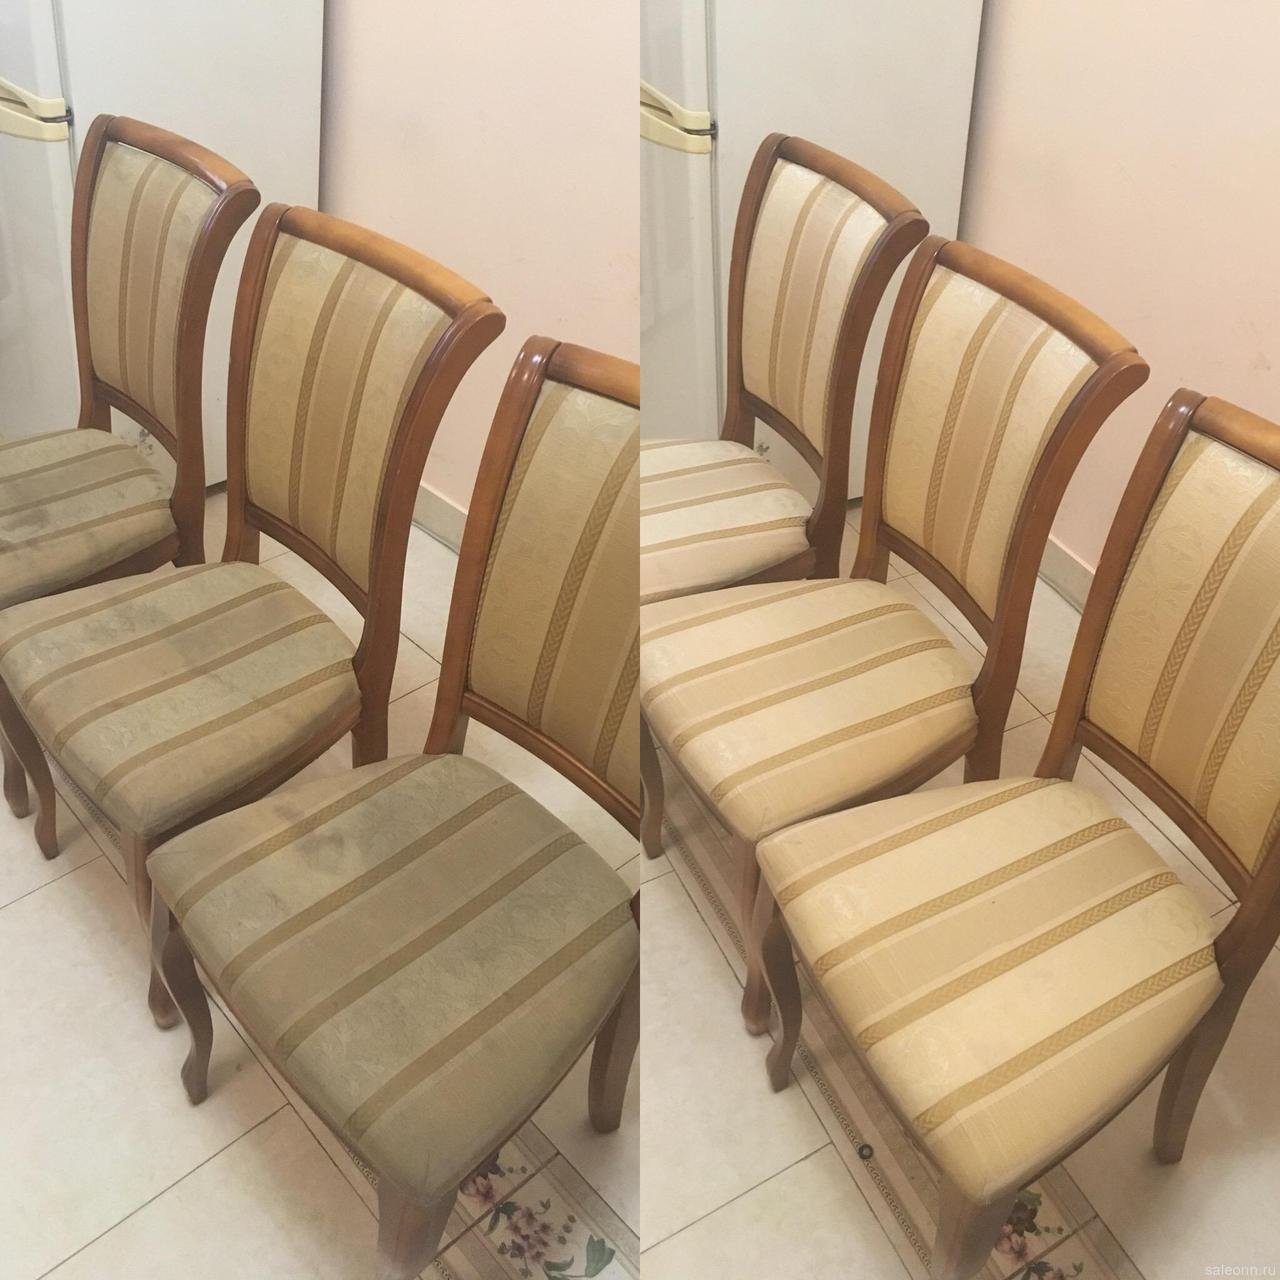 Химчистка стульев до и после